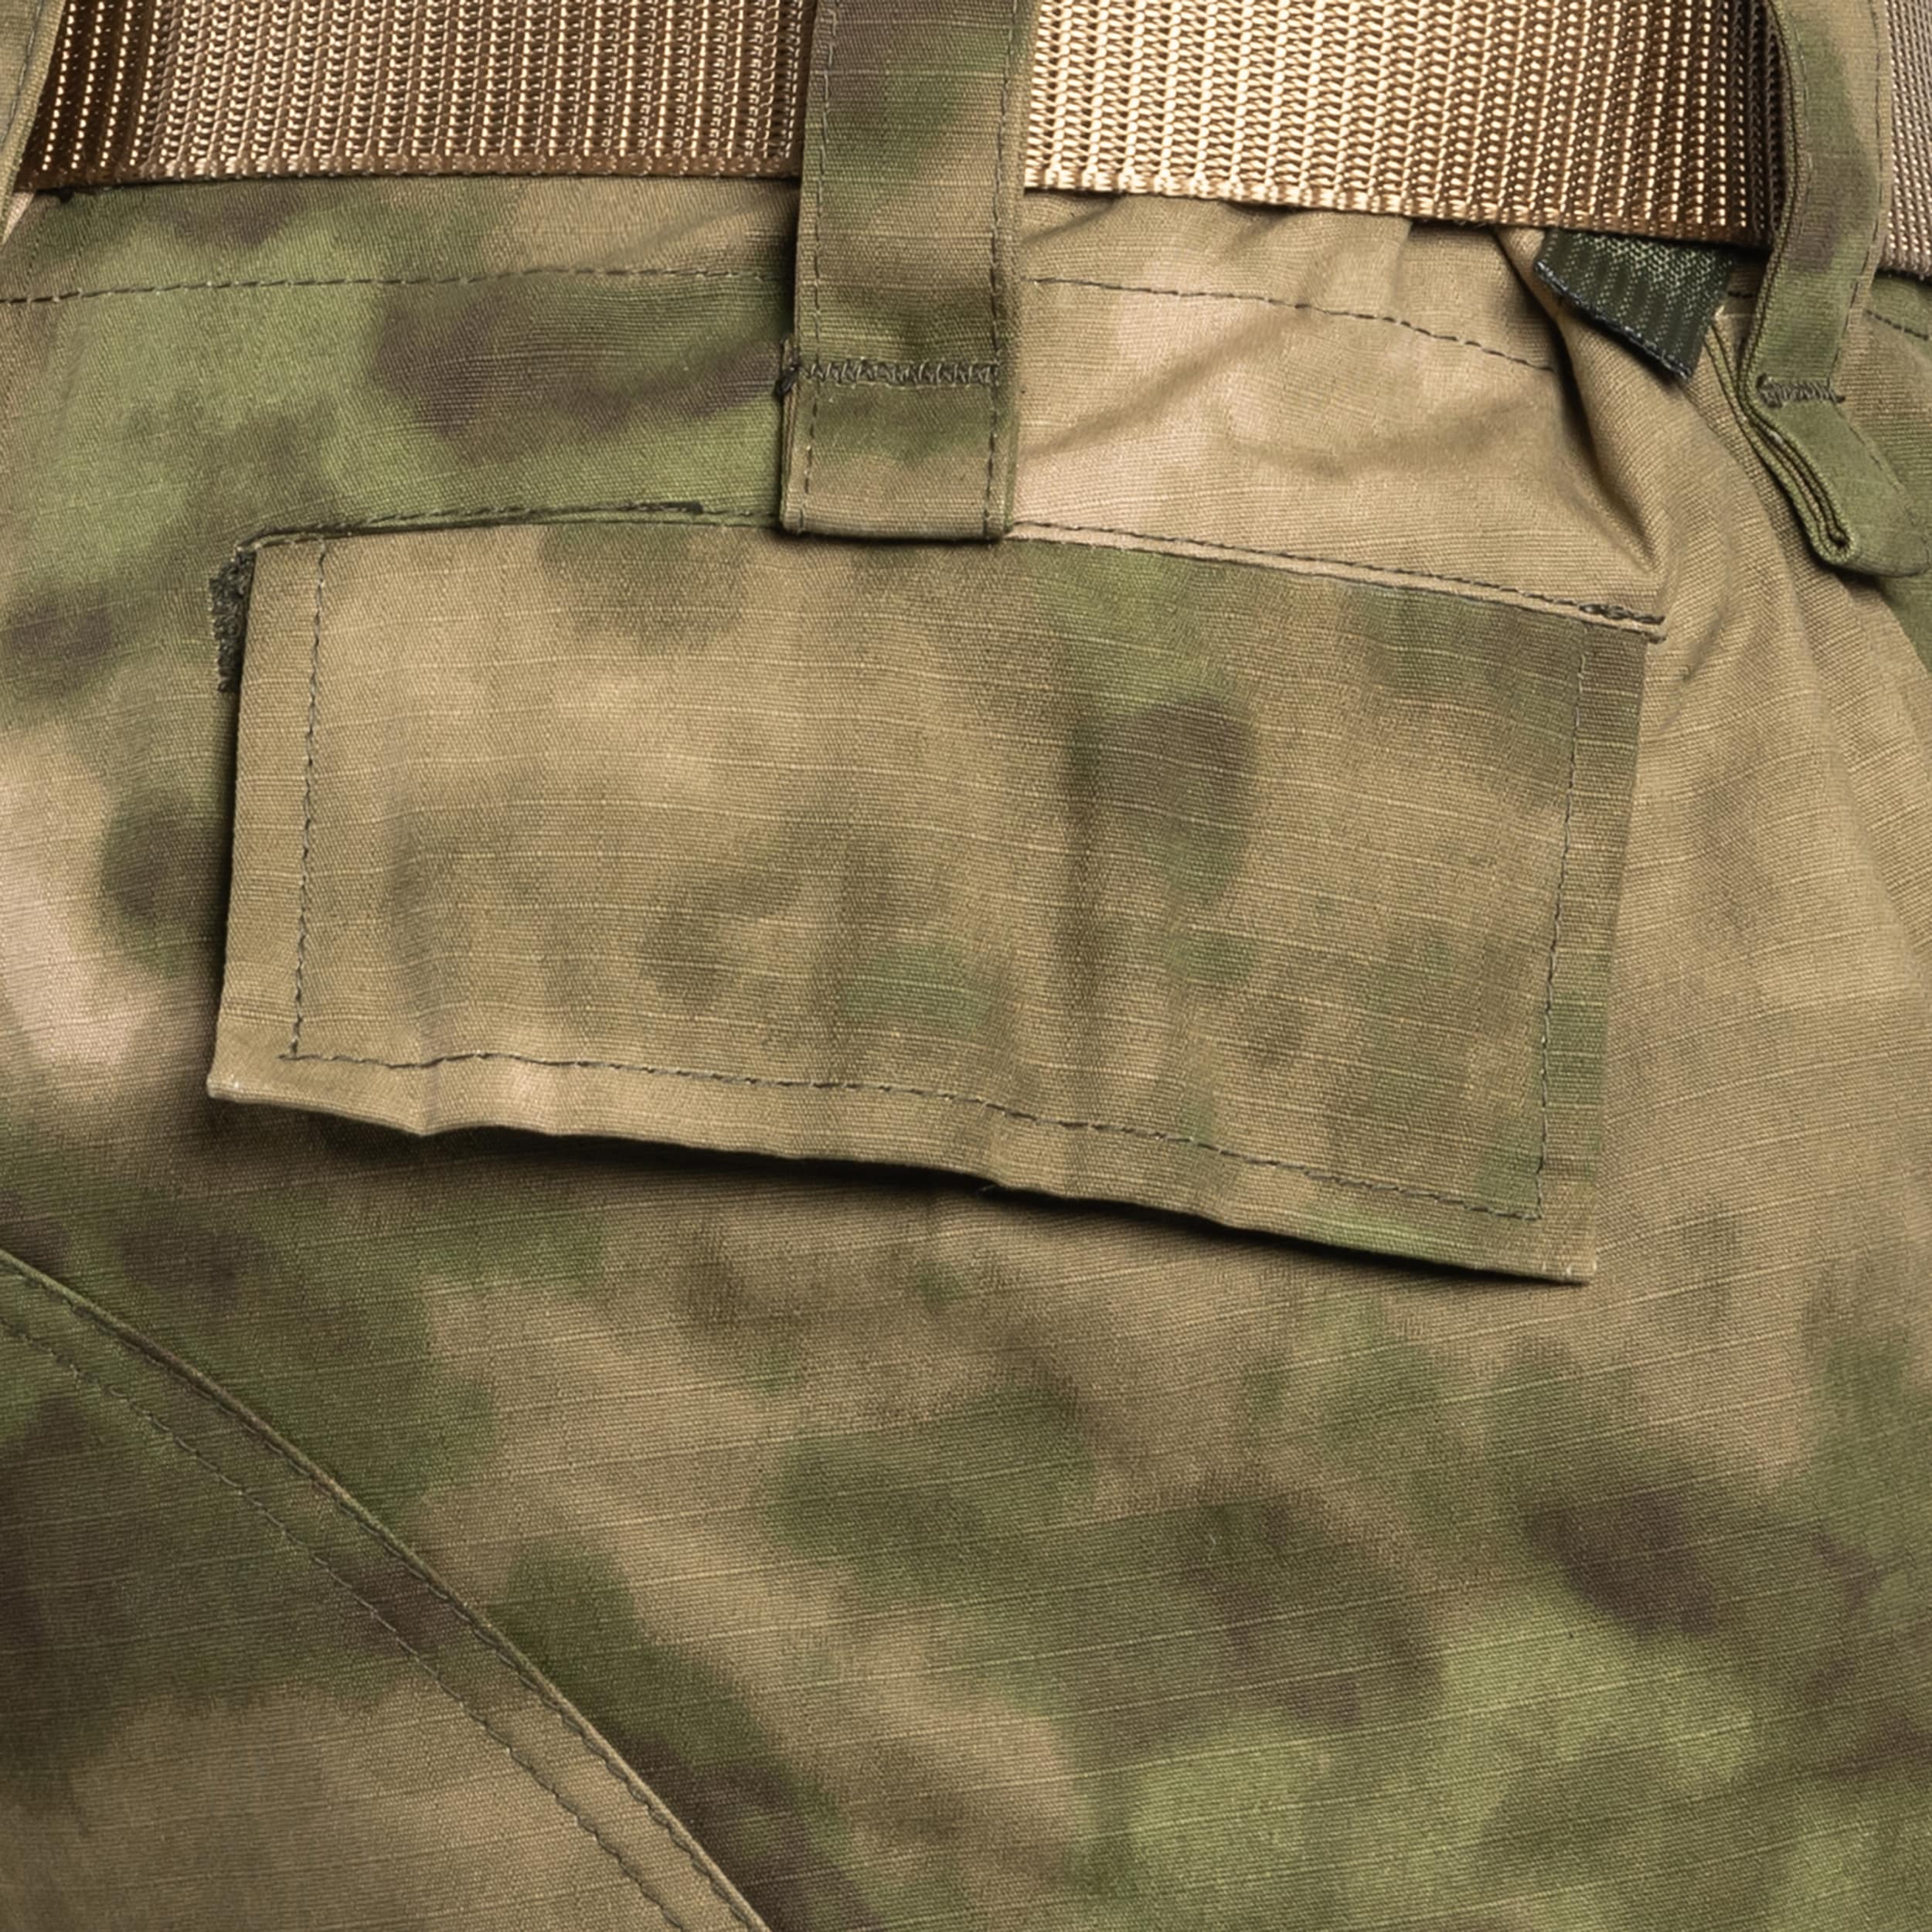 Spodnie wojskowe Texar WZ10 Ripstop FG-Cam